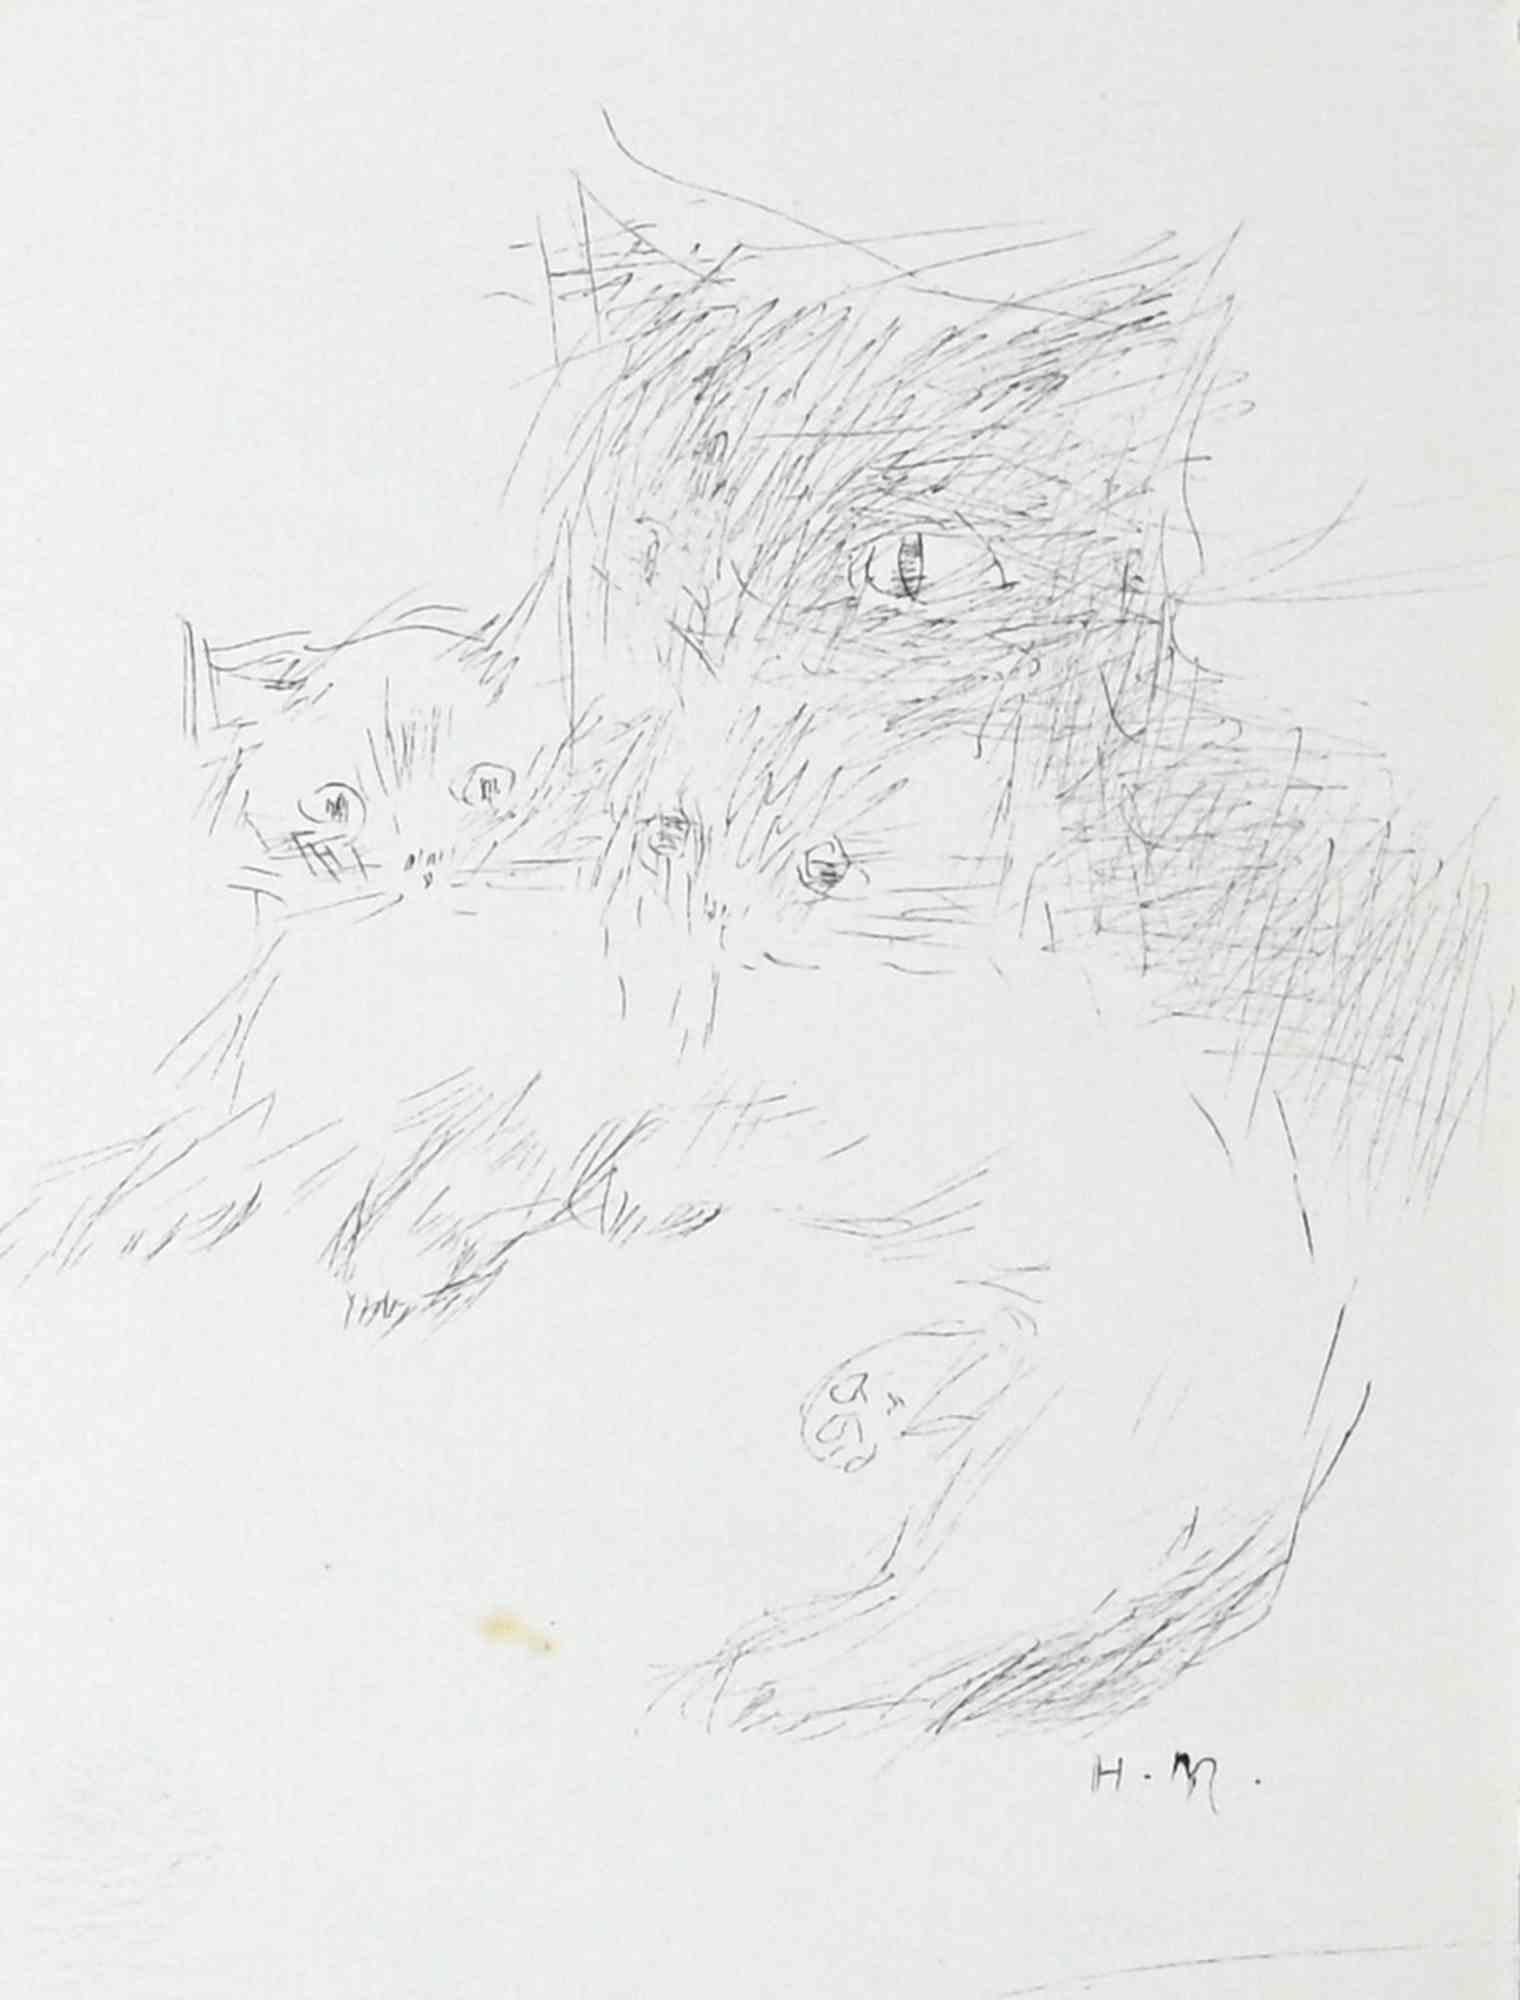 Portrait of Cats View est un dessin original au stylo réalisé par Helène Neveur dans les années 1970.

Bonnes conditions.

L'œuvre d'art est représentée par des traits sûrs dans une composition bien équilibrée.